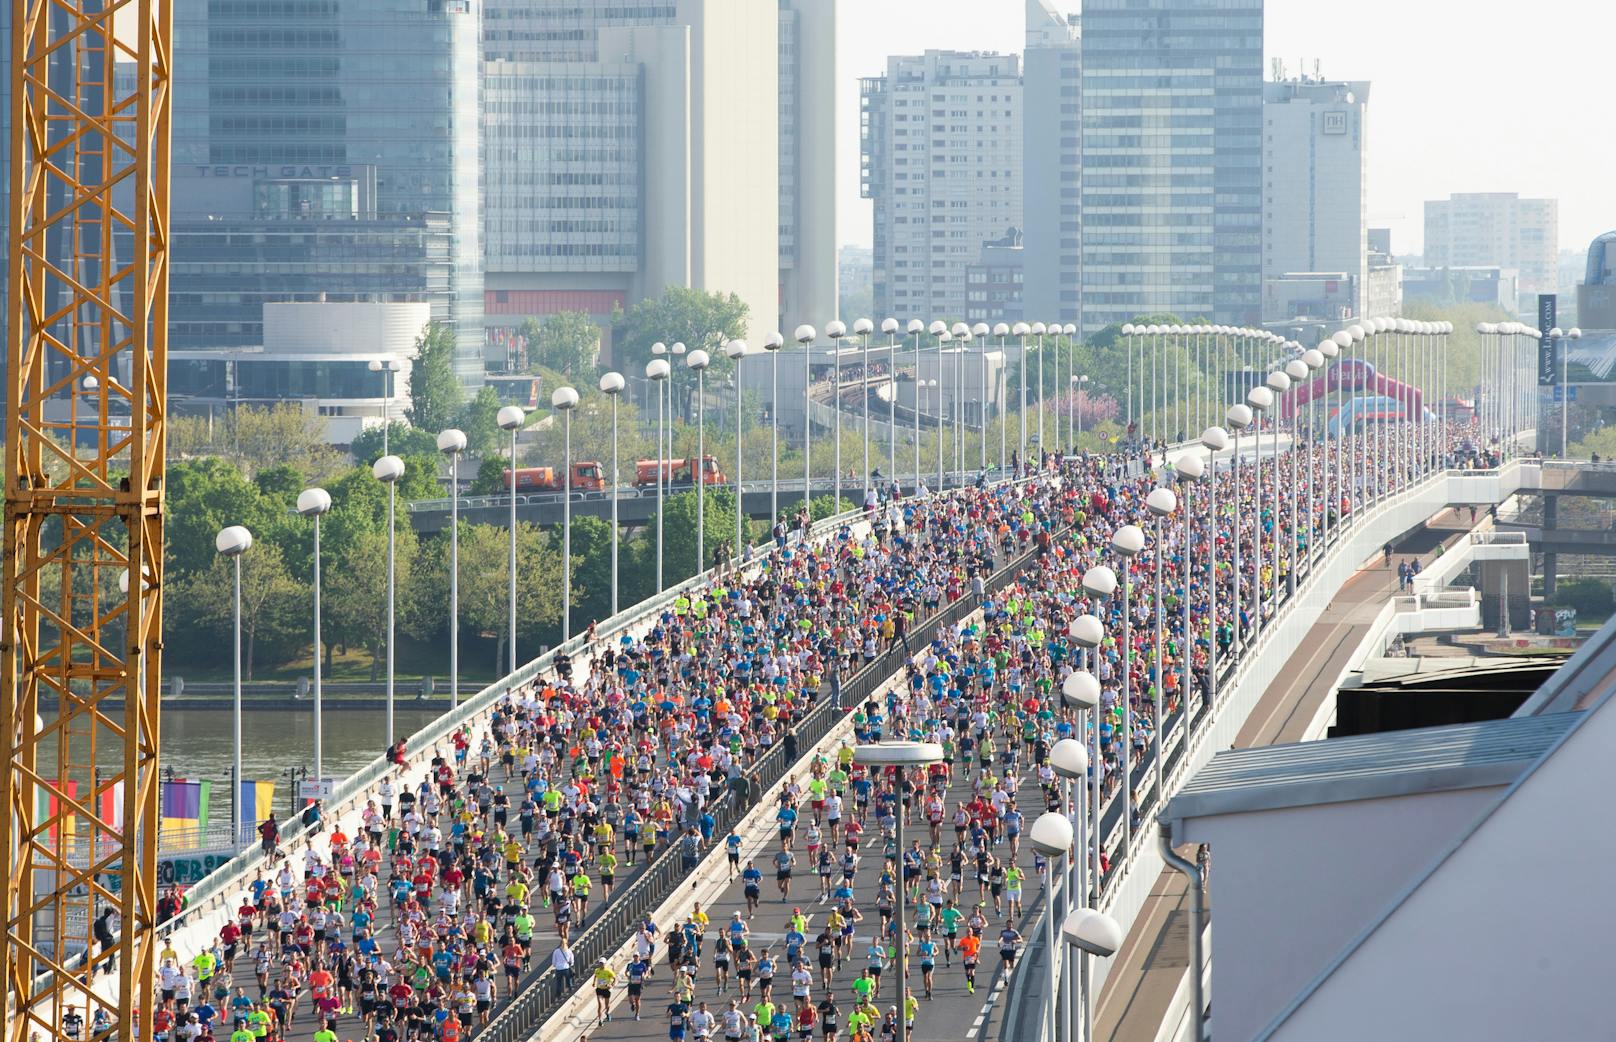 Sperren, Ausweich-Routen – alle Infos zum City Marathon